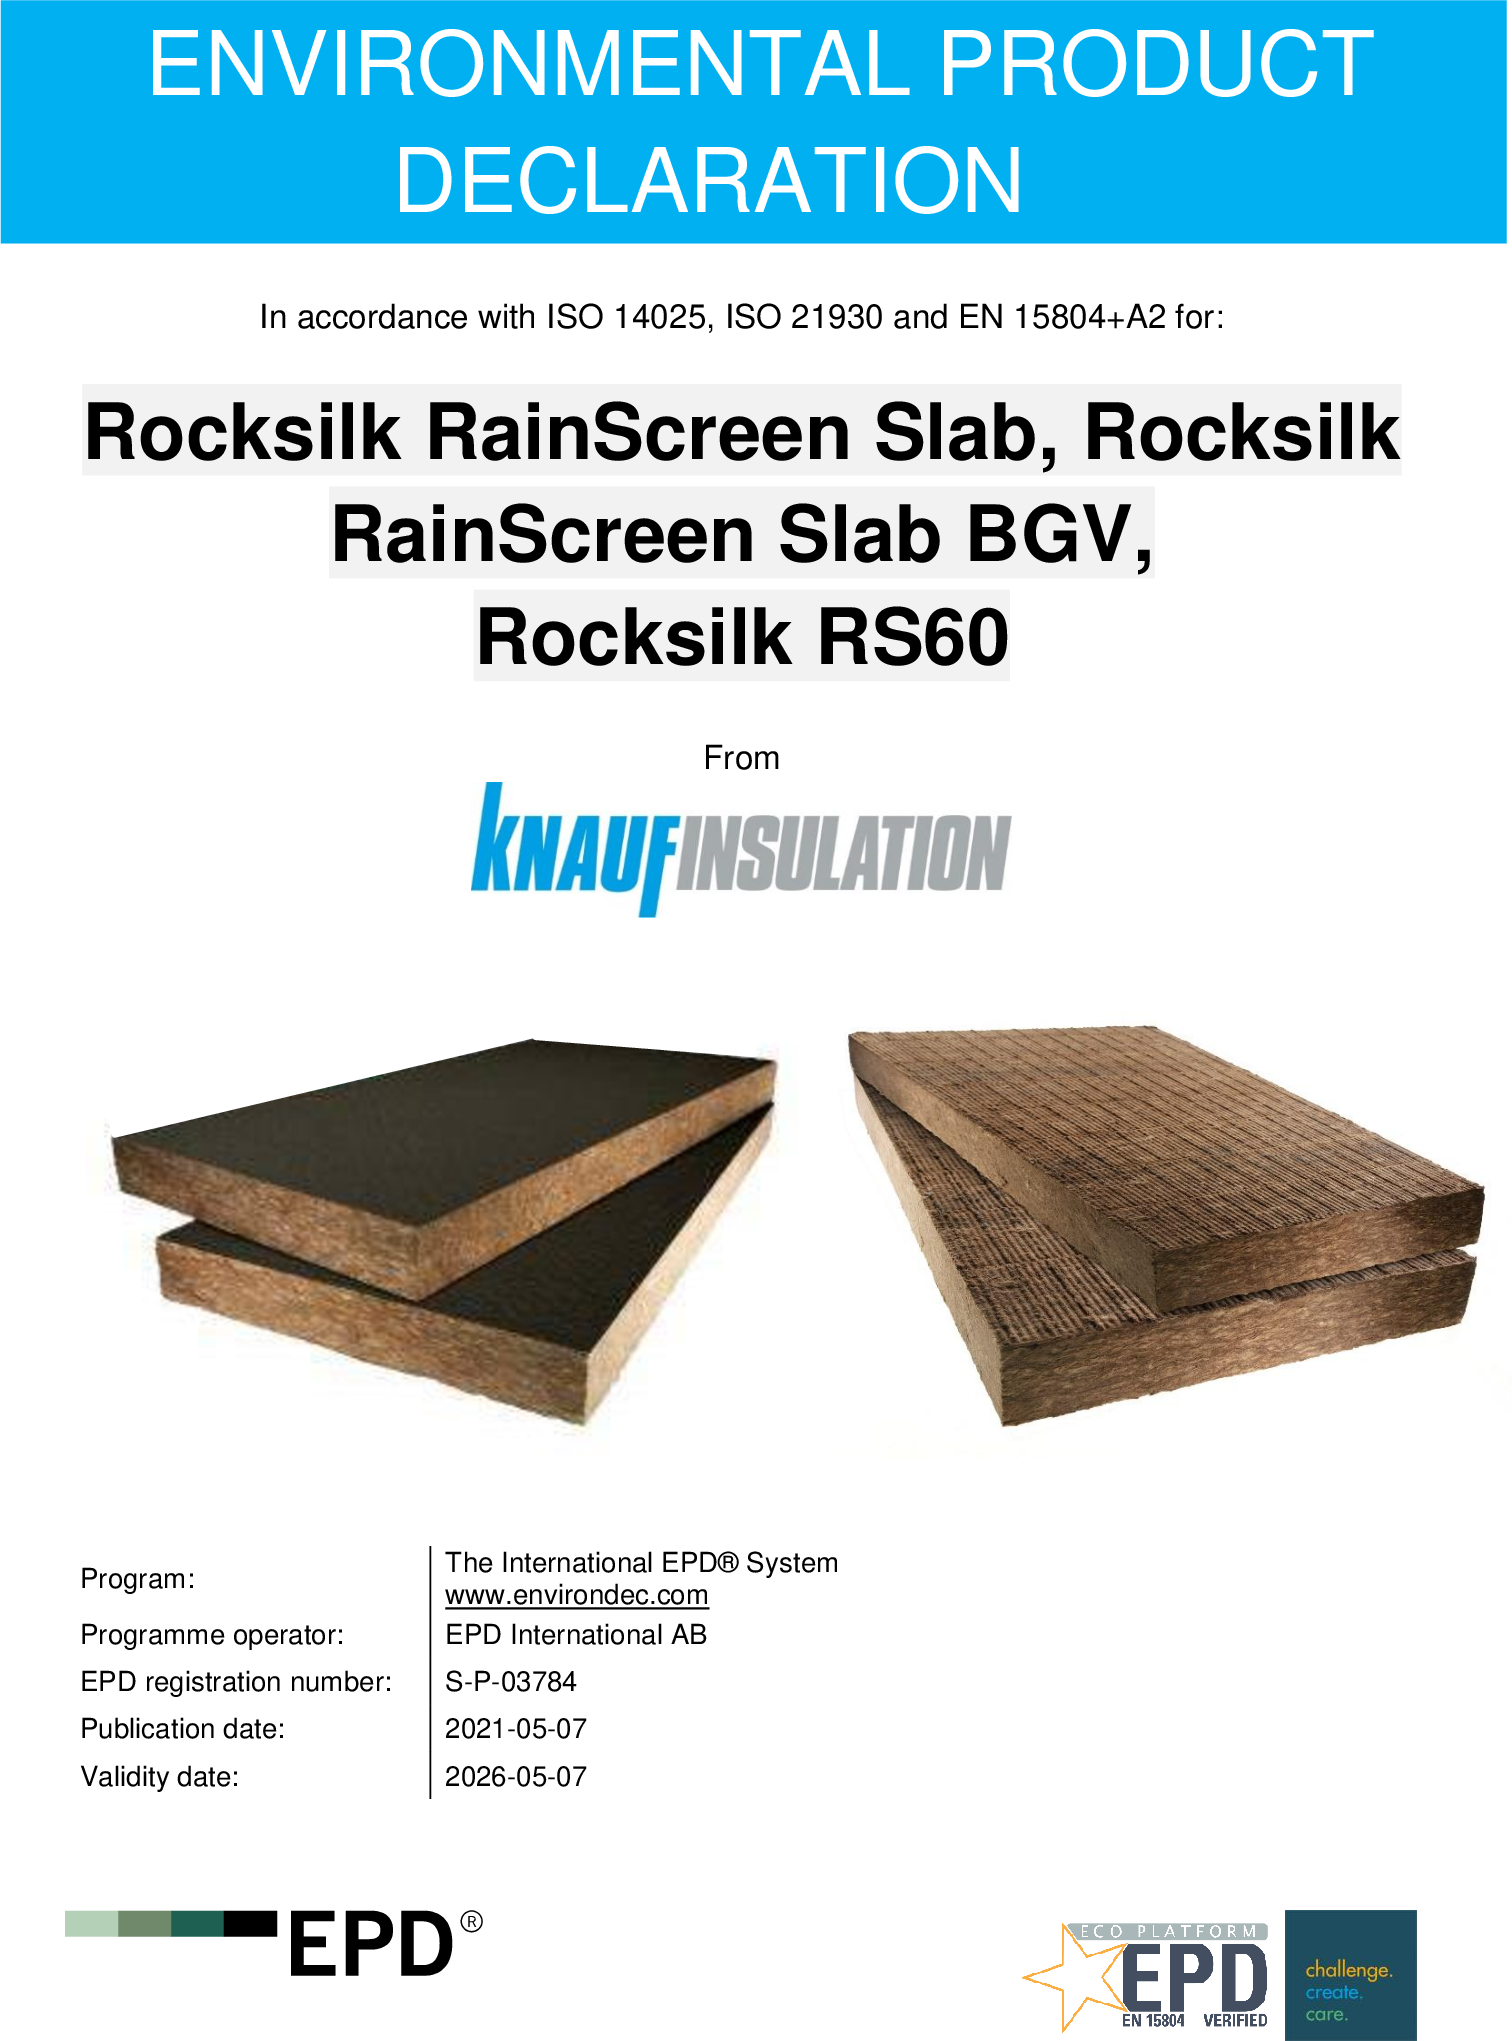 Rocksilk RainScreen Slab, Rocksilk RainScreen Slab BGV, Rocksilk RS60